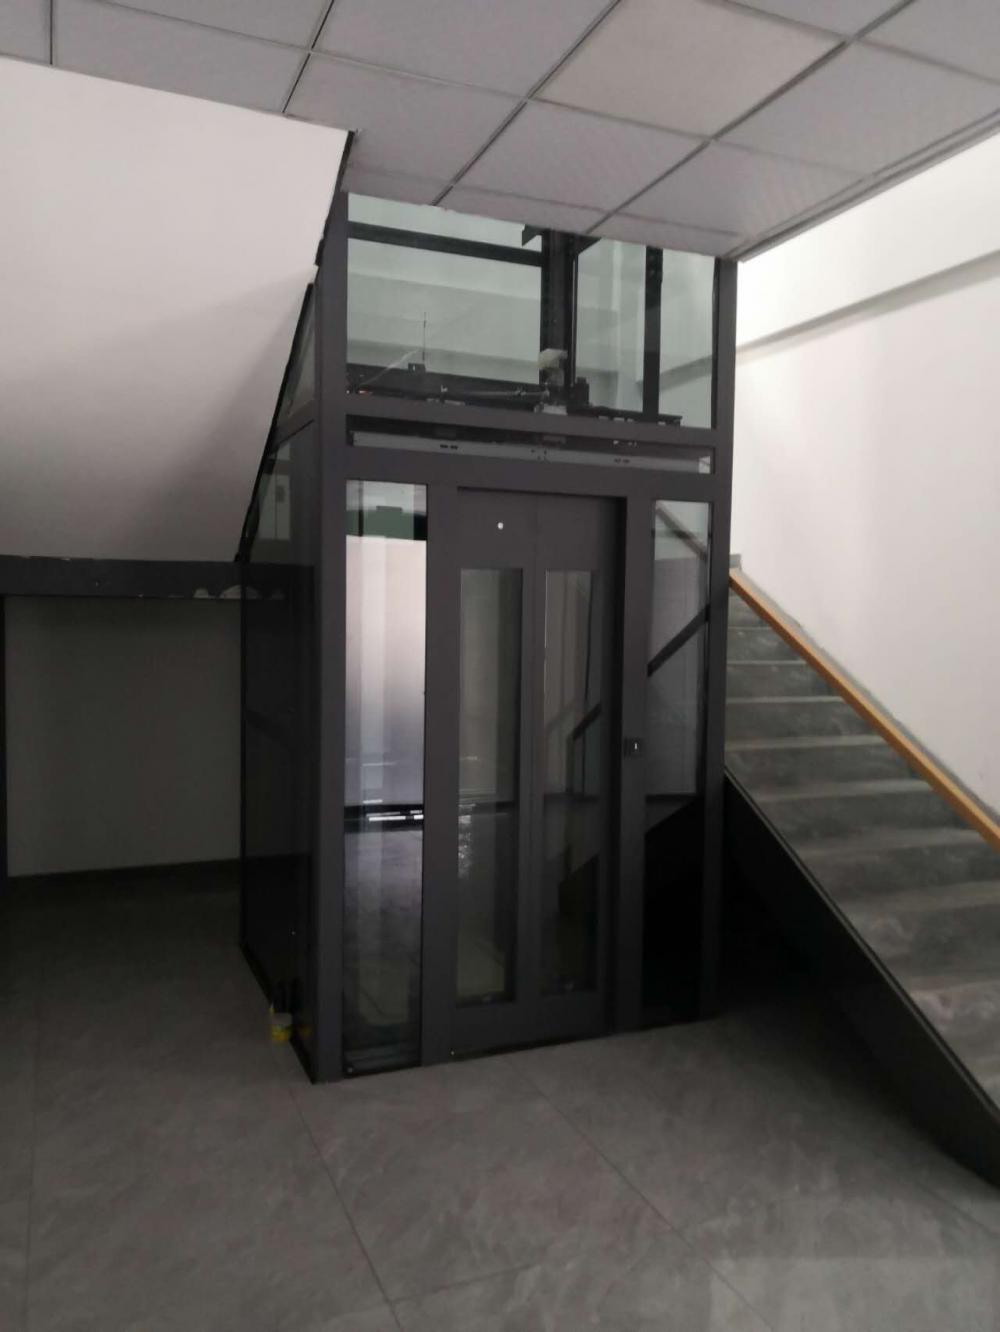 Melhor preço 1-3 piso de elevador caseiro vertical interno